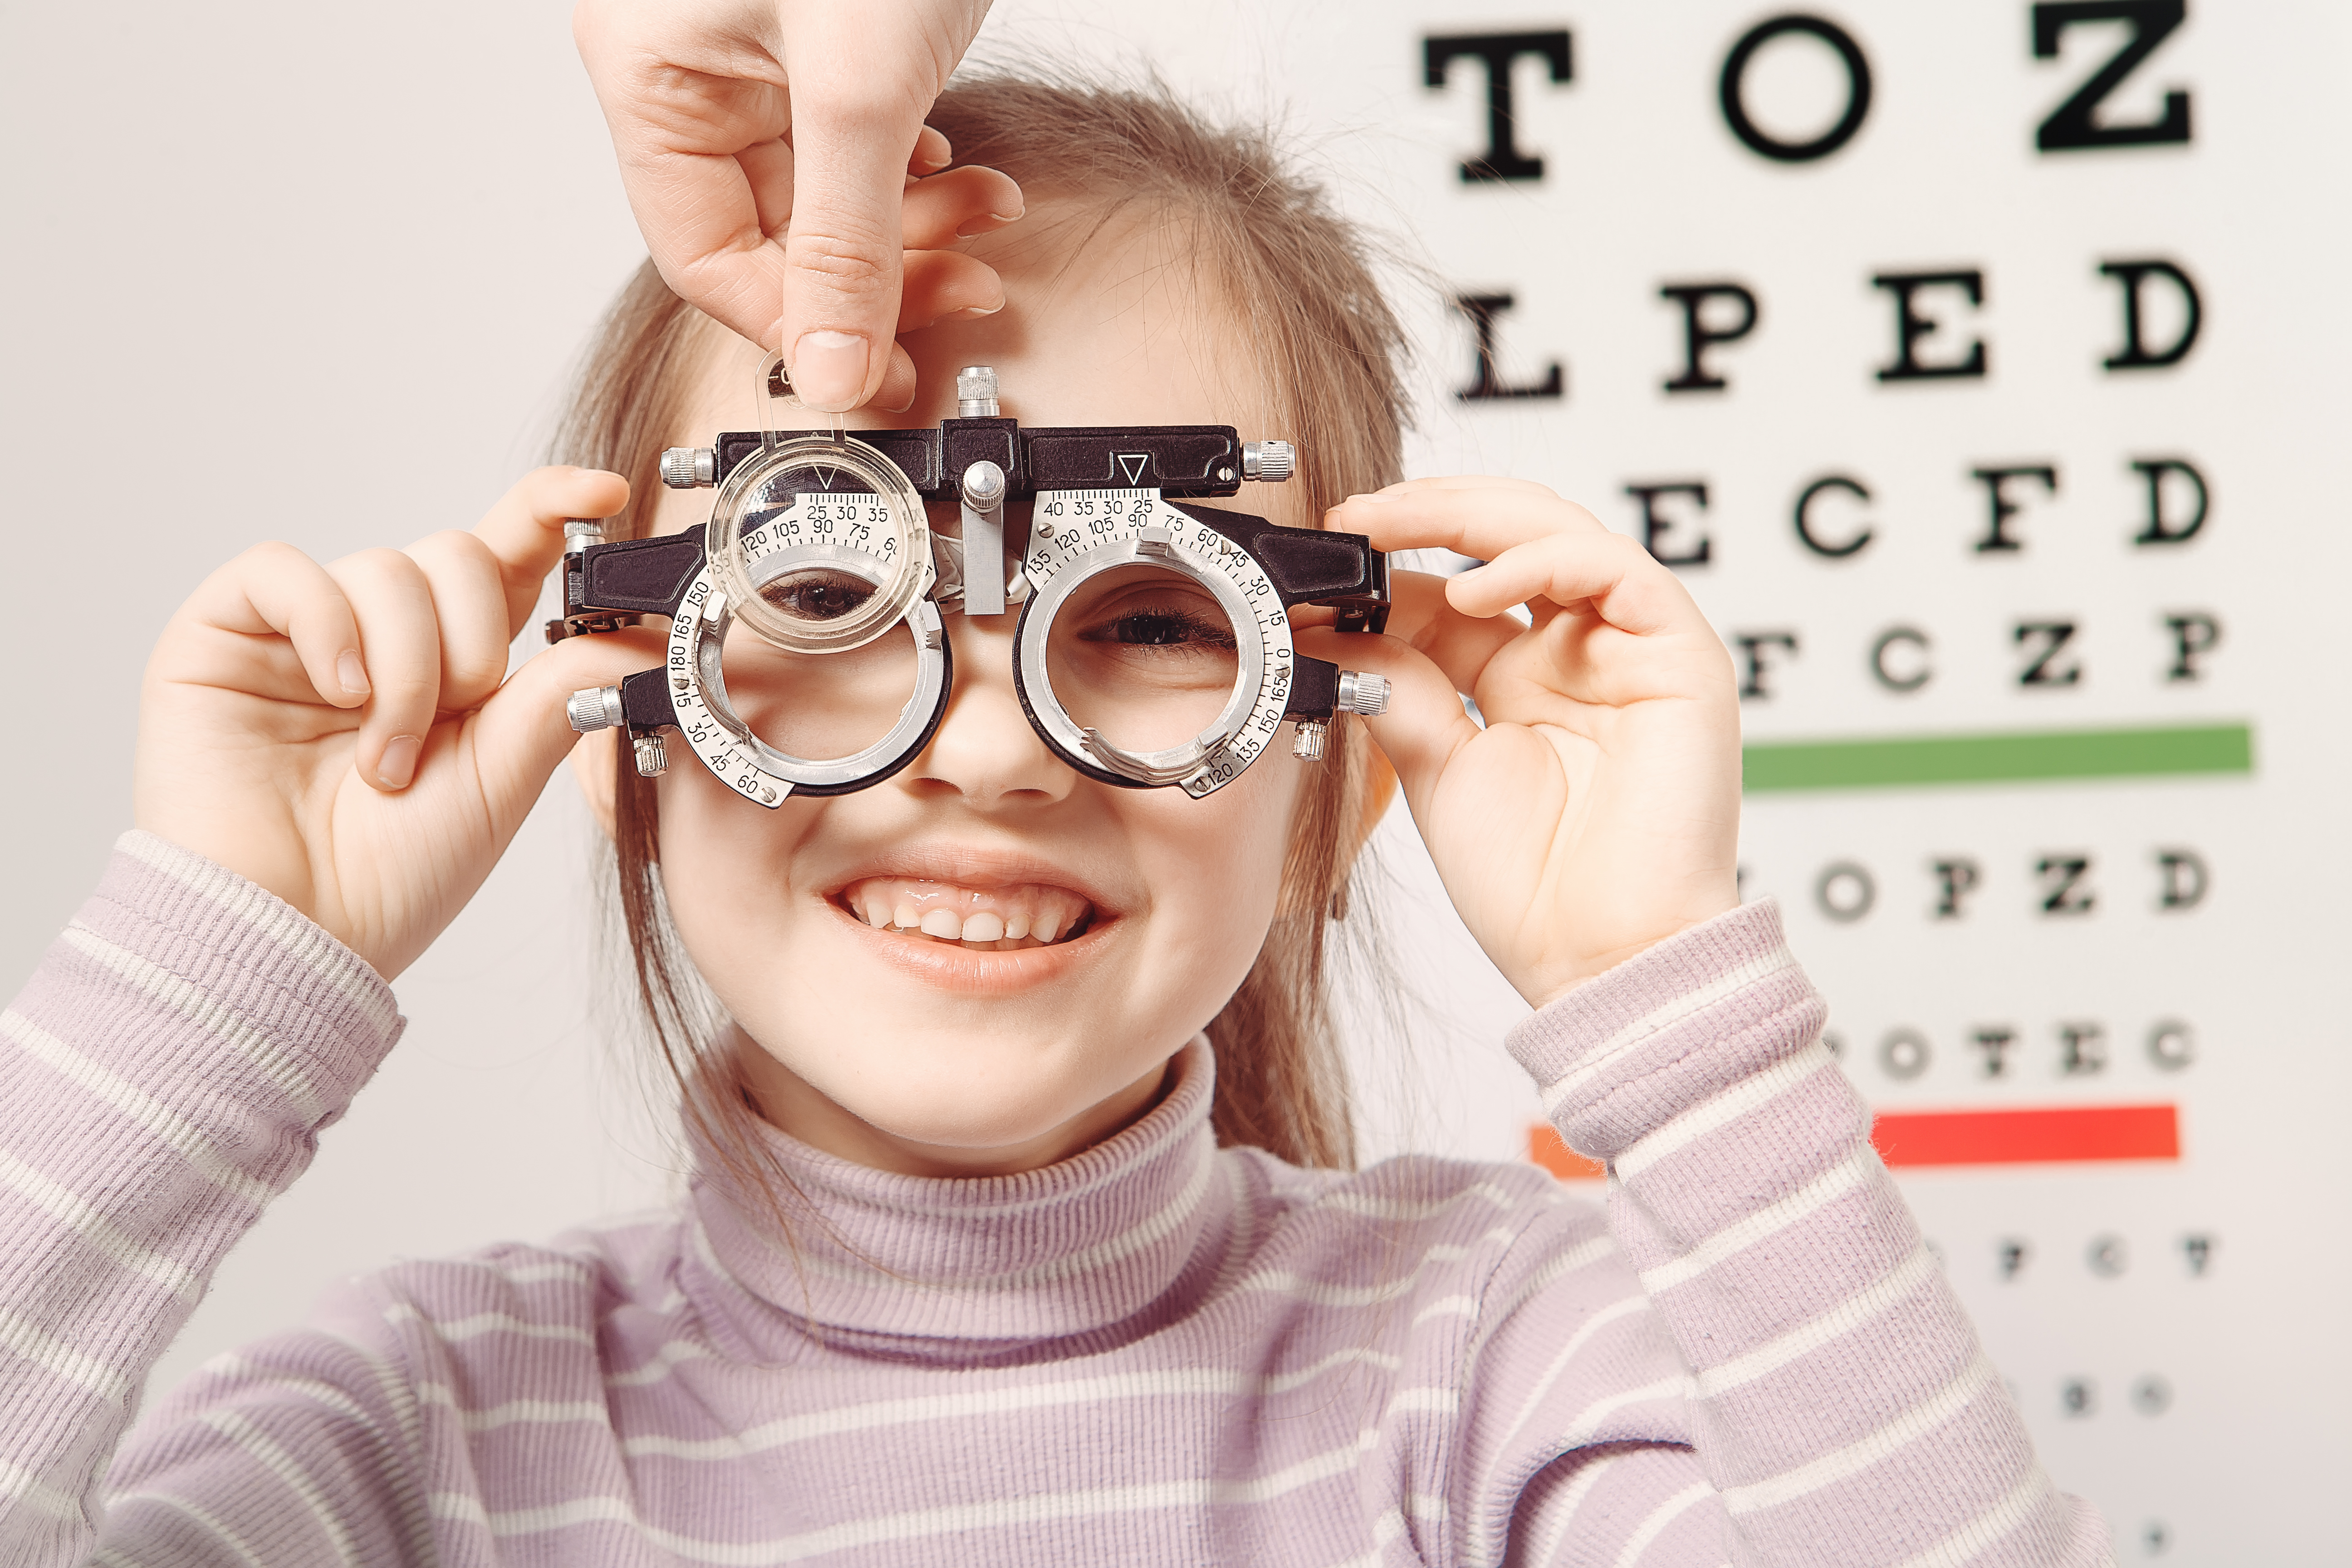 Имеет плохое зрение. Нарушение зрения. Дети с нарушением зрения. Дети в очках для зрения. Нарущения зренря умдетей.